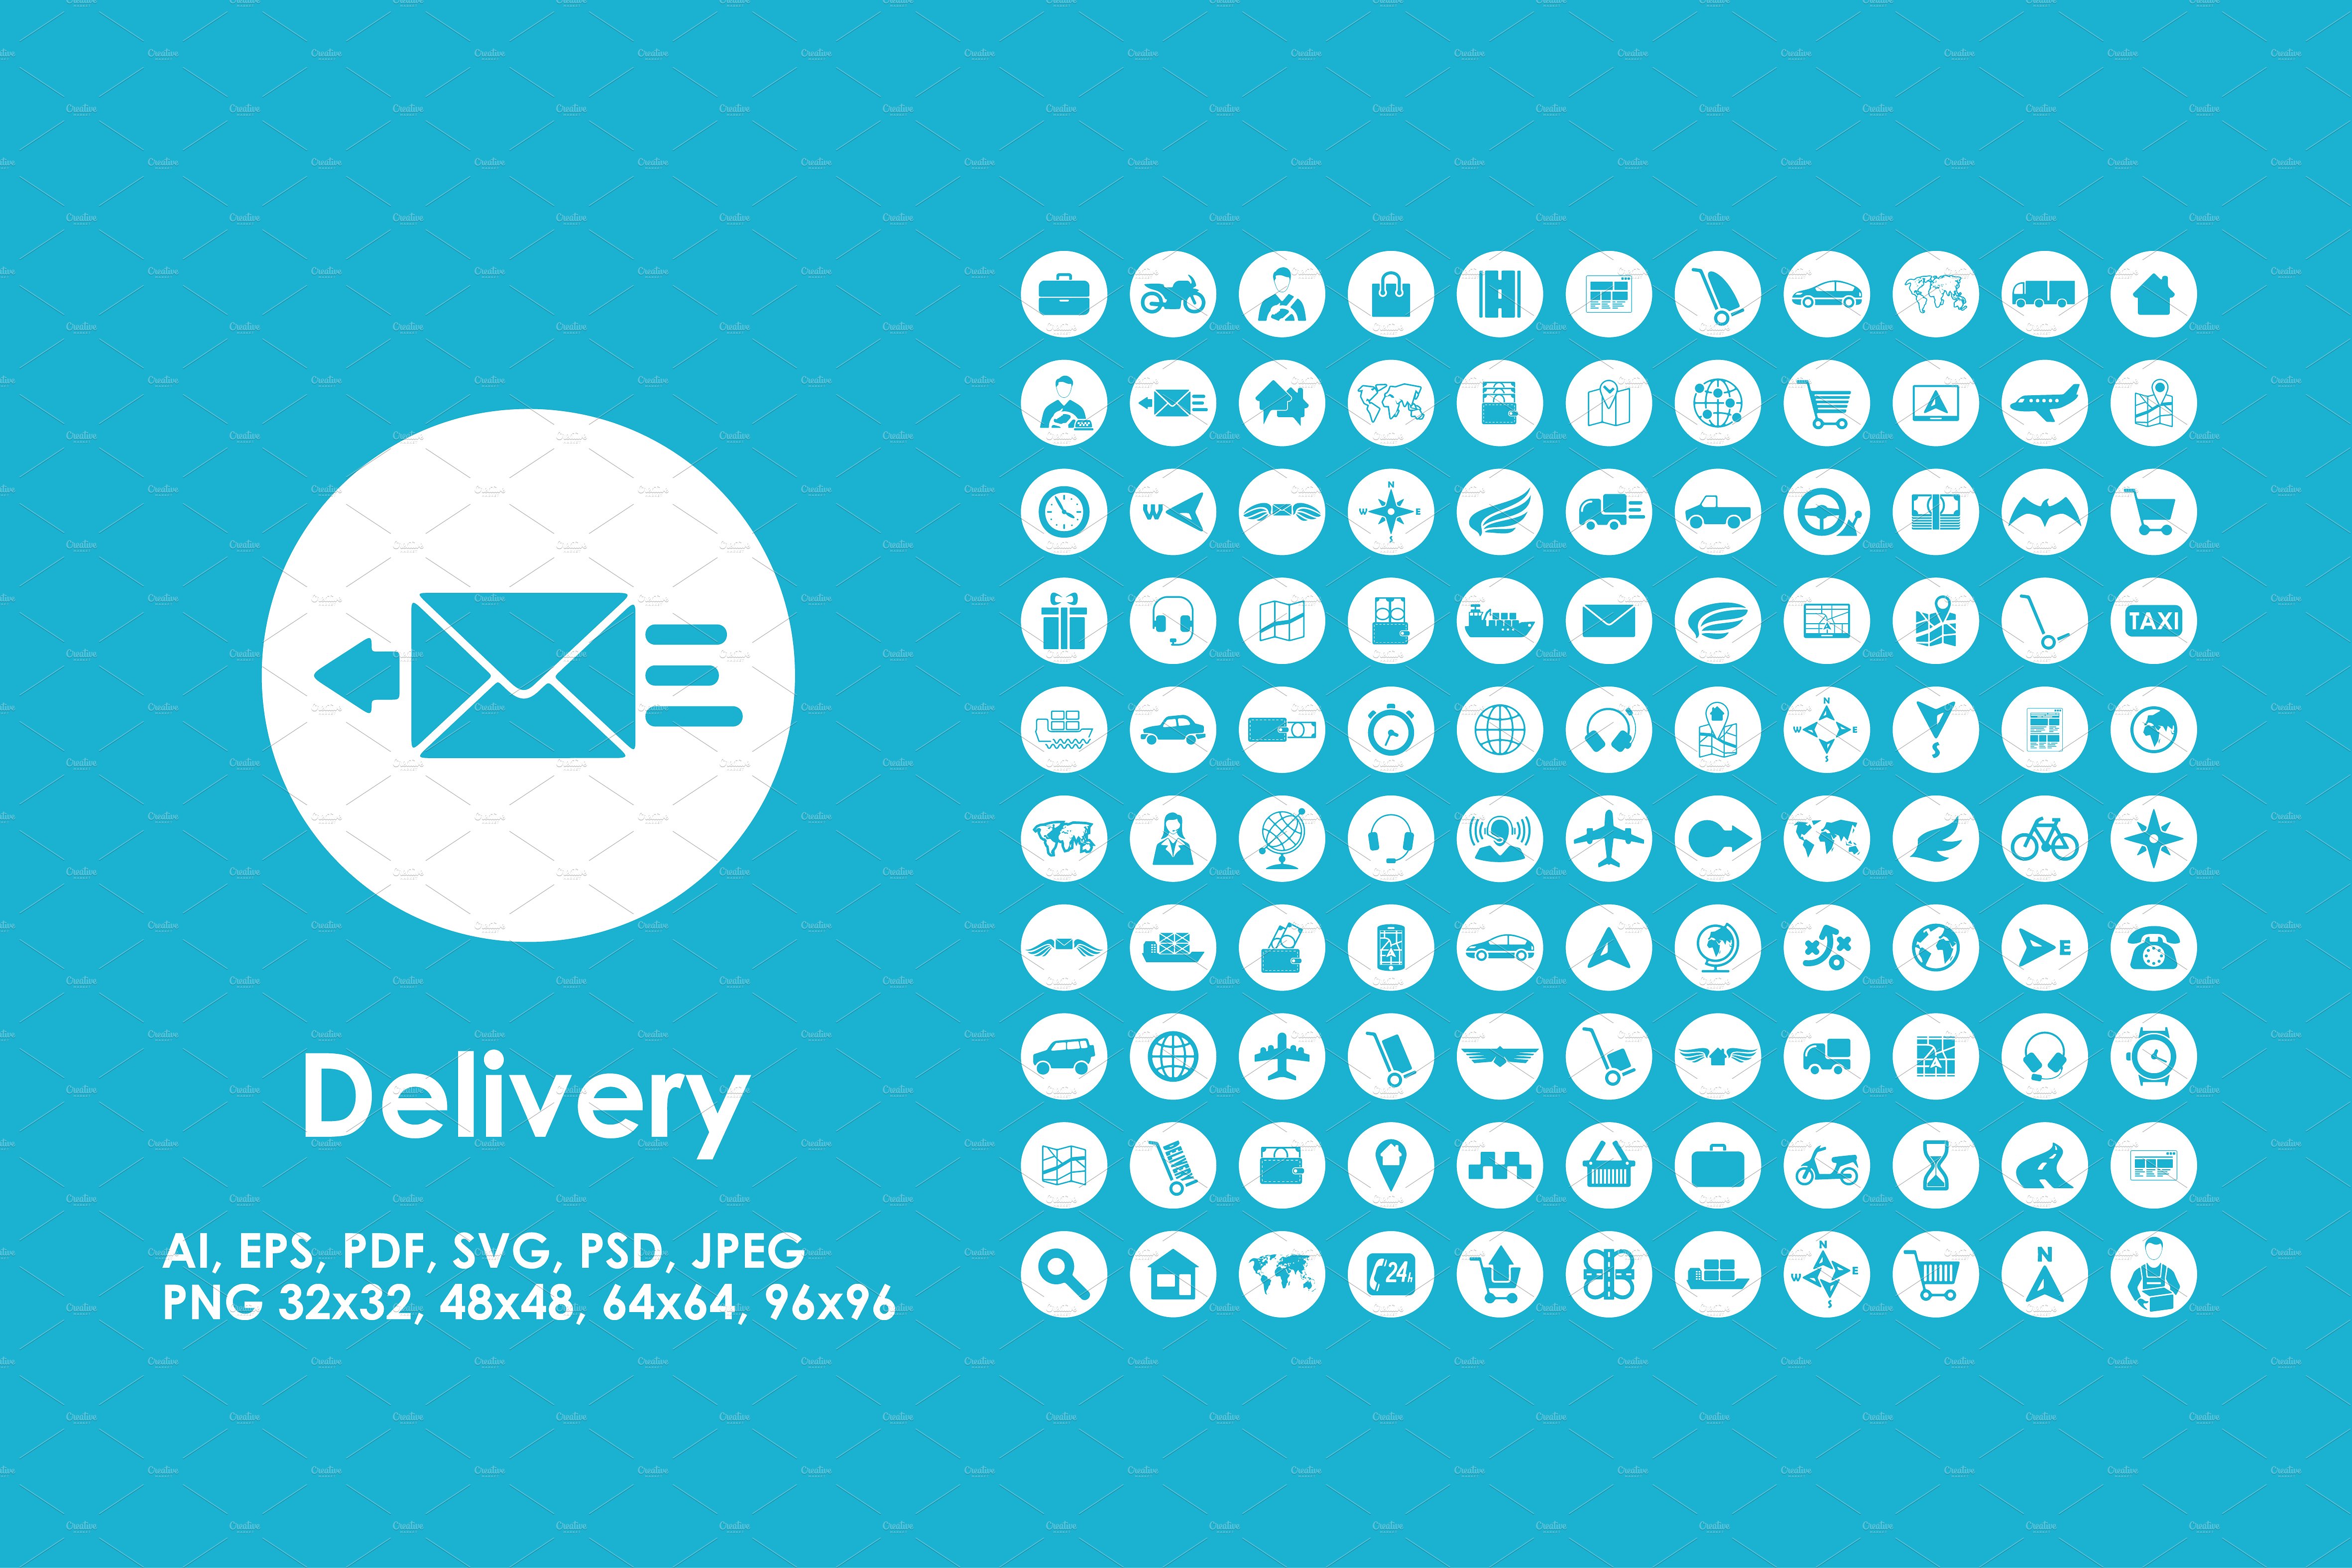 快递物流图标素材 100 delivery icons #1